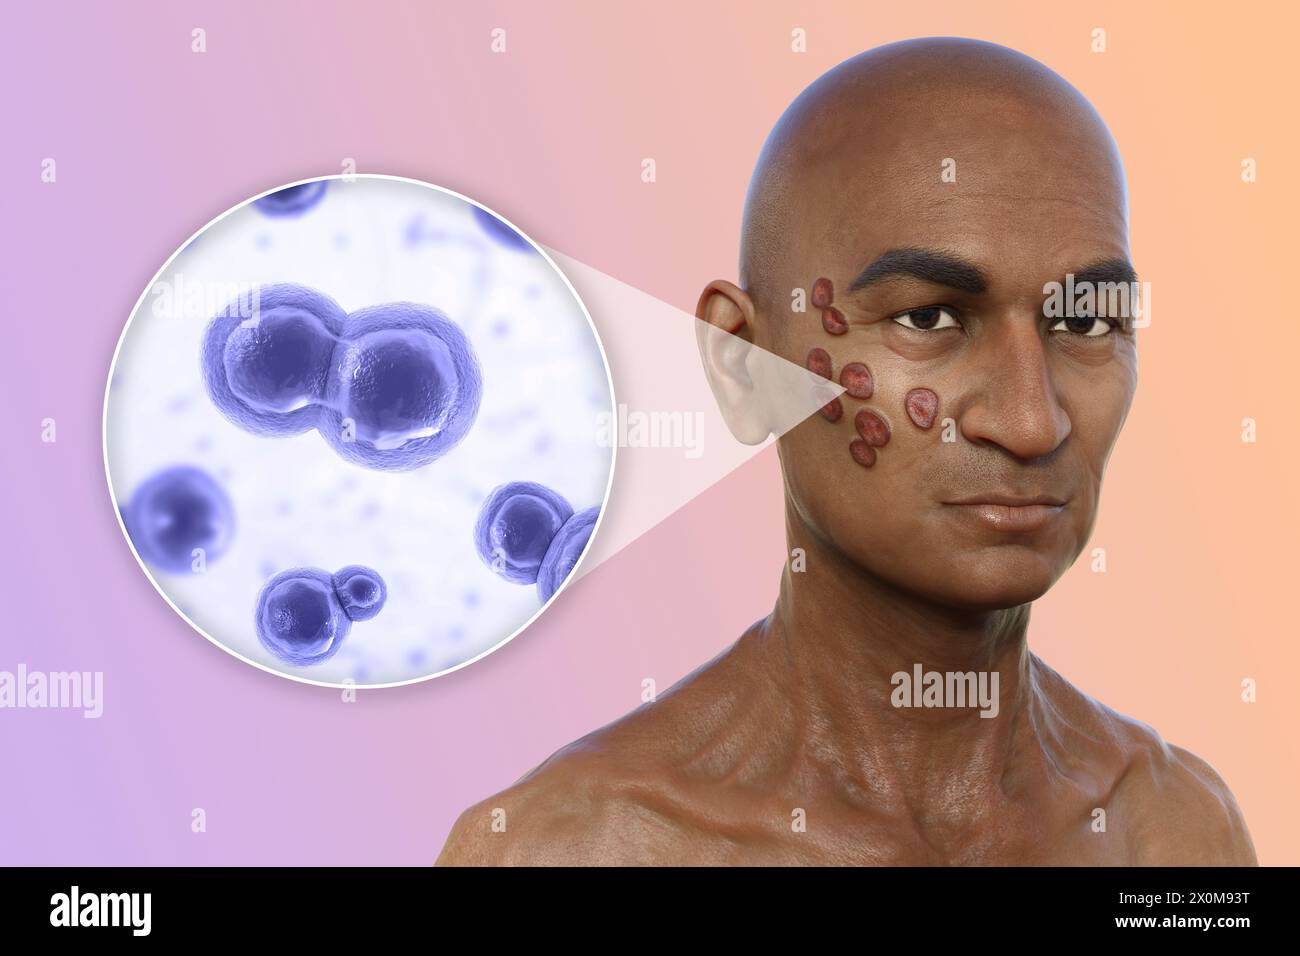 3D-Darstellung eines Mannes mit multiplen Gesichts- und Halsläsionen durch Blastomykose und Nahaufnahme der verursachenden Blastomyces dermatitidis-Pilze. Blastomykose ist oft asymptomatisch, kann aber Lungenprobleme verursachen. In einigen Fällen entwickeln sich solche Läsionen auf der Haut (kutane Blastomykose), die zu irreversiblen Narbenbildungen führen können. Stockfoto